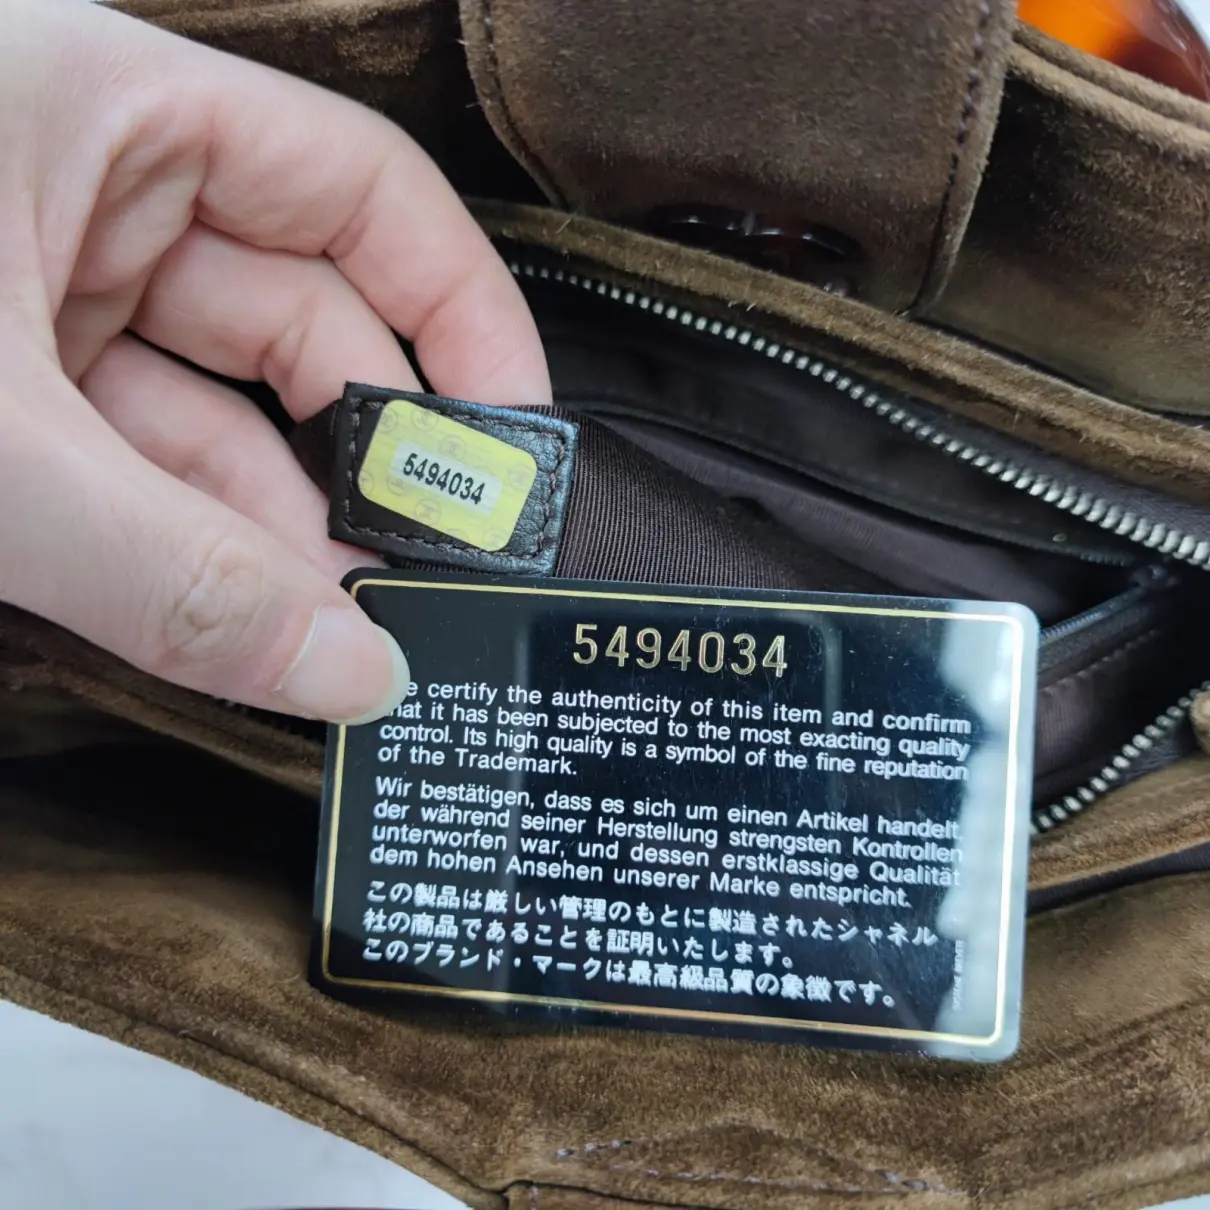 Handbag Chanel - Vintage